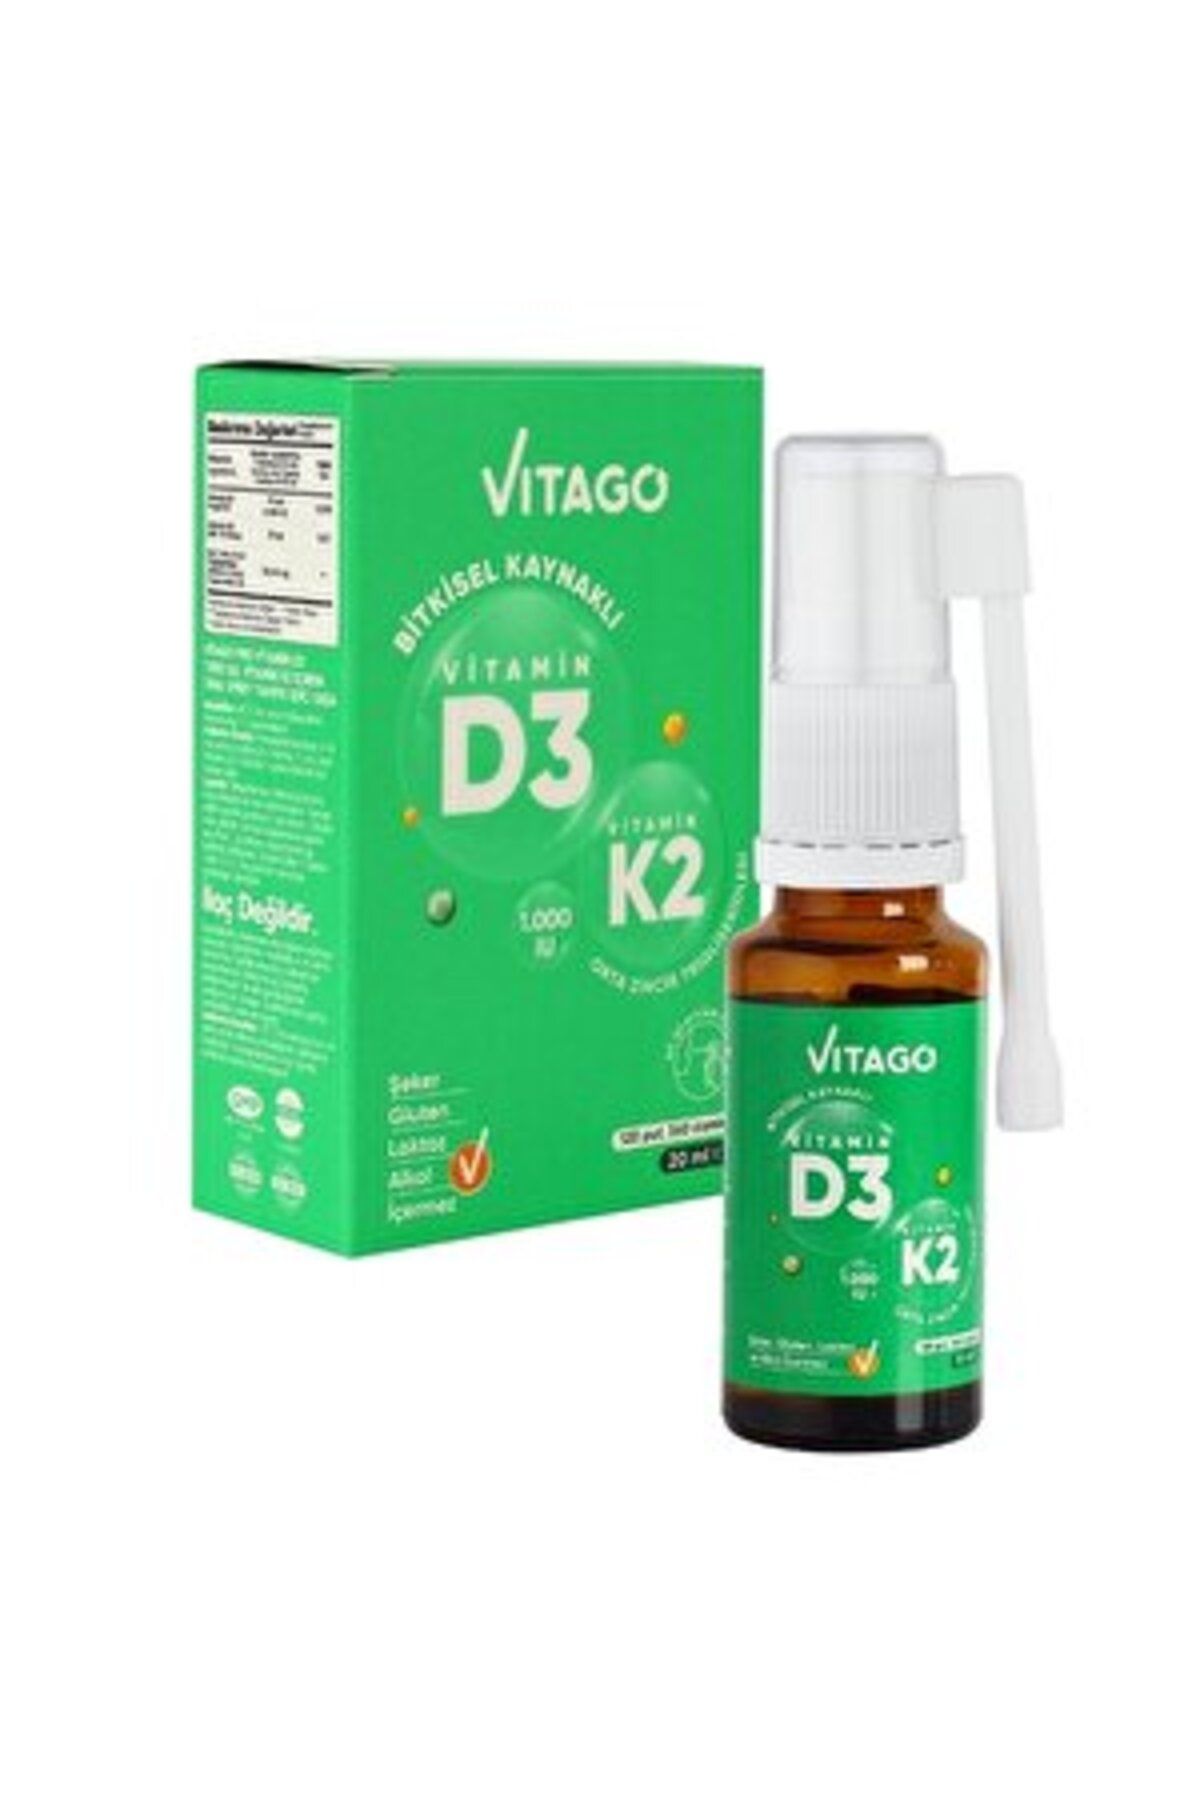 Vitago D3 Vitamini, K2 Vitamini İçeren Sprey 20 ml ( 2 ADET )